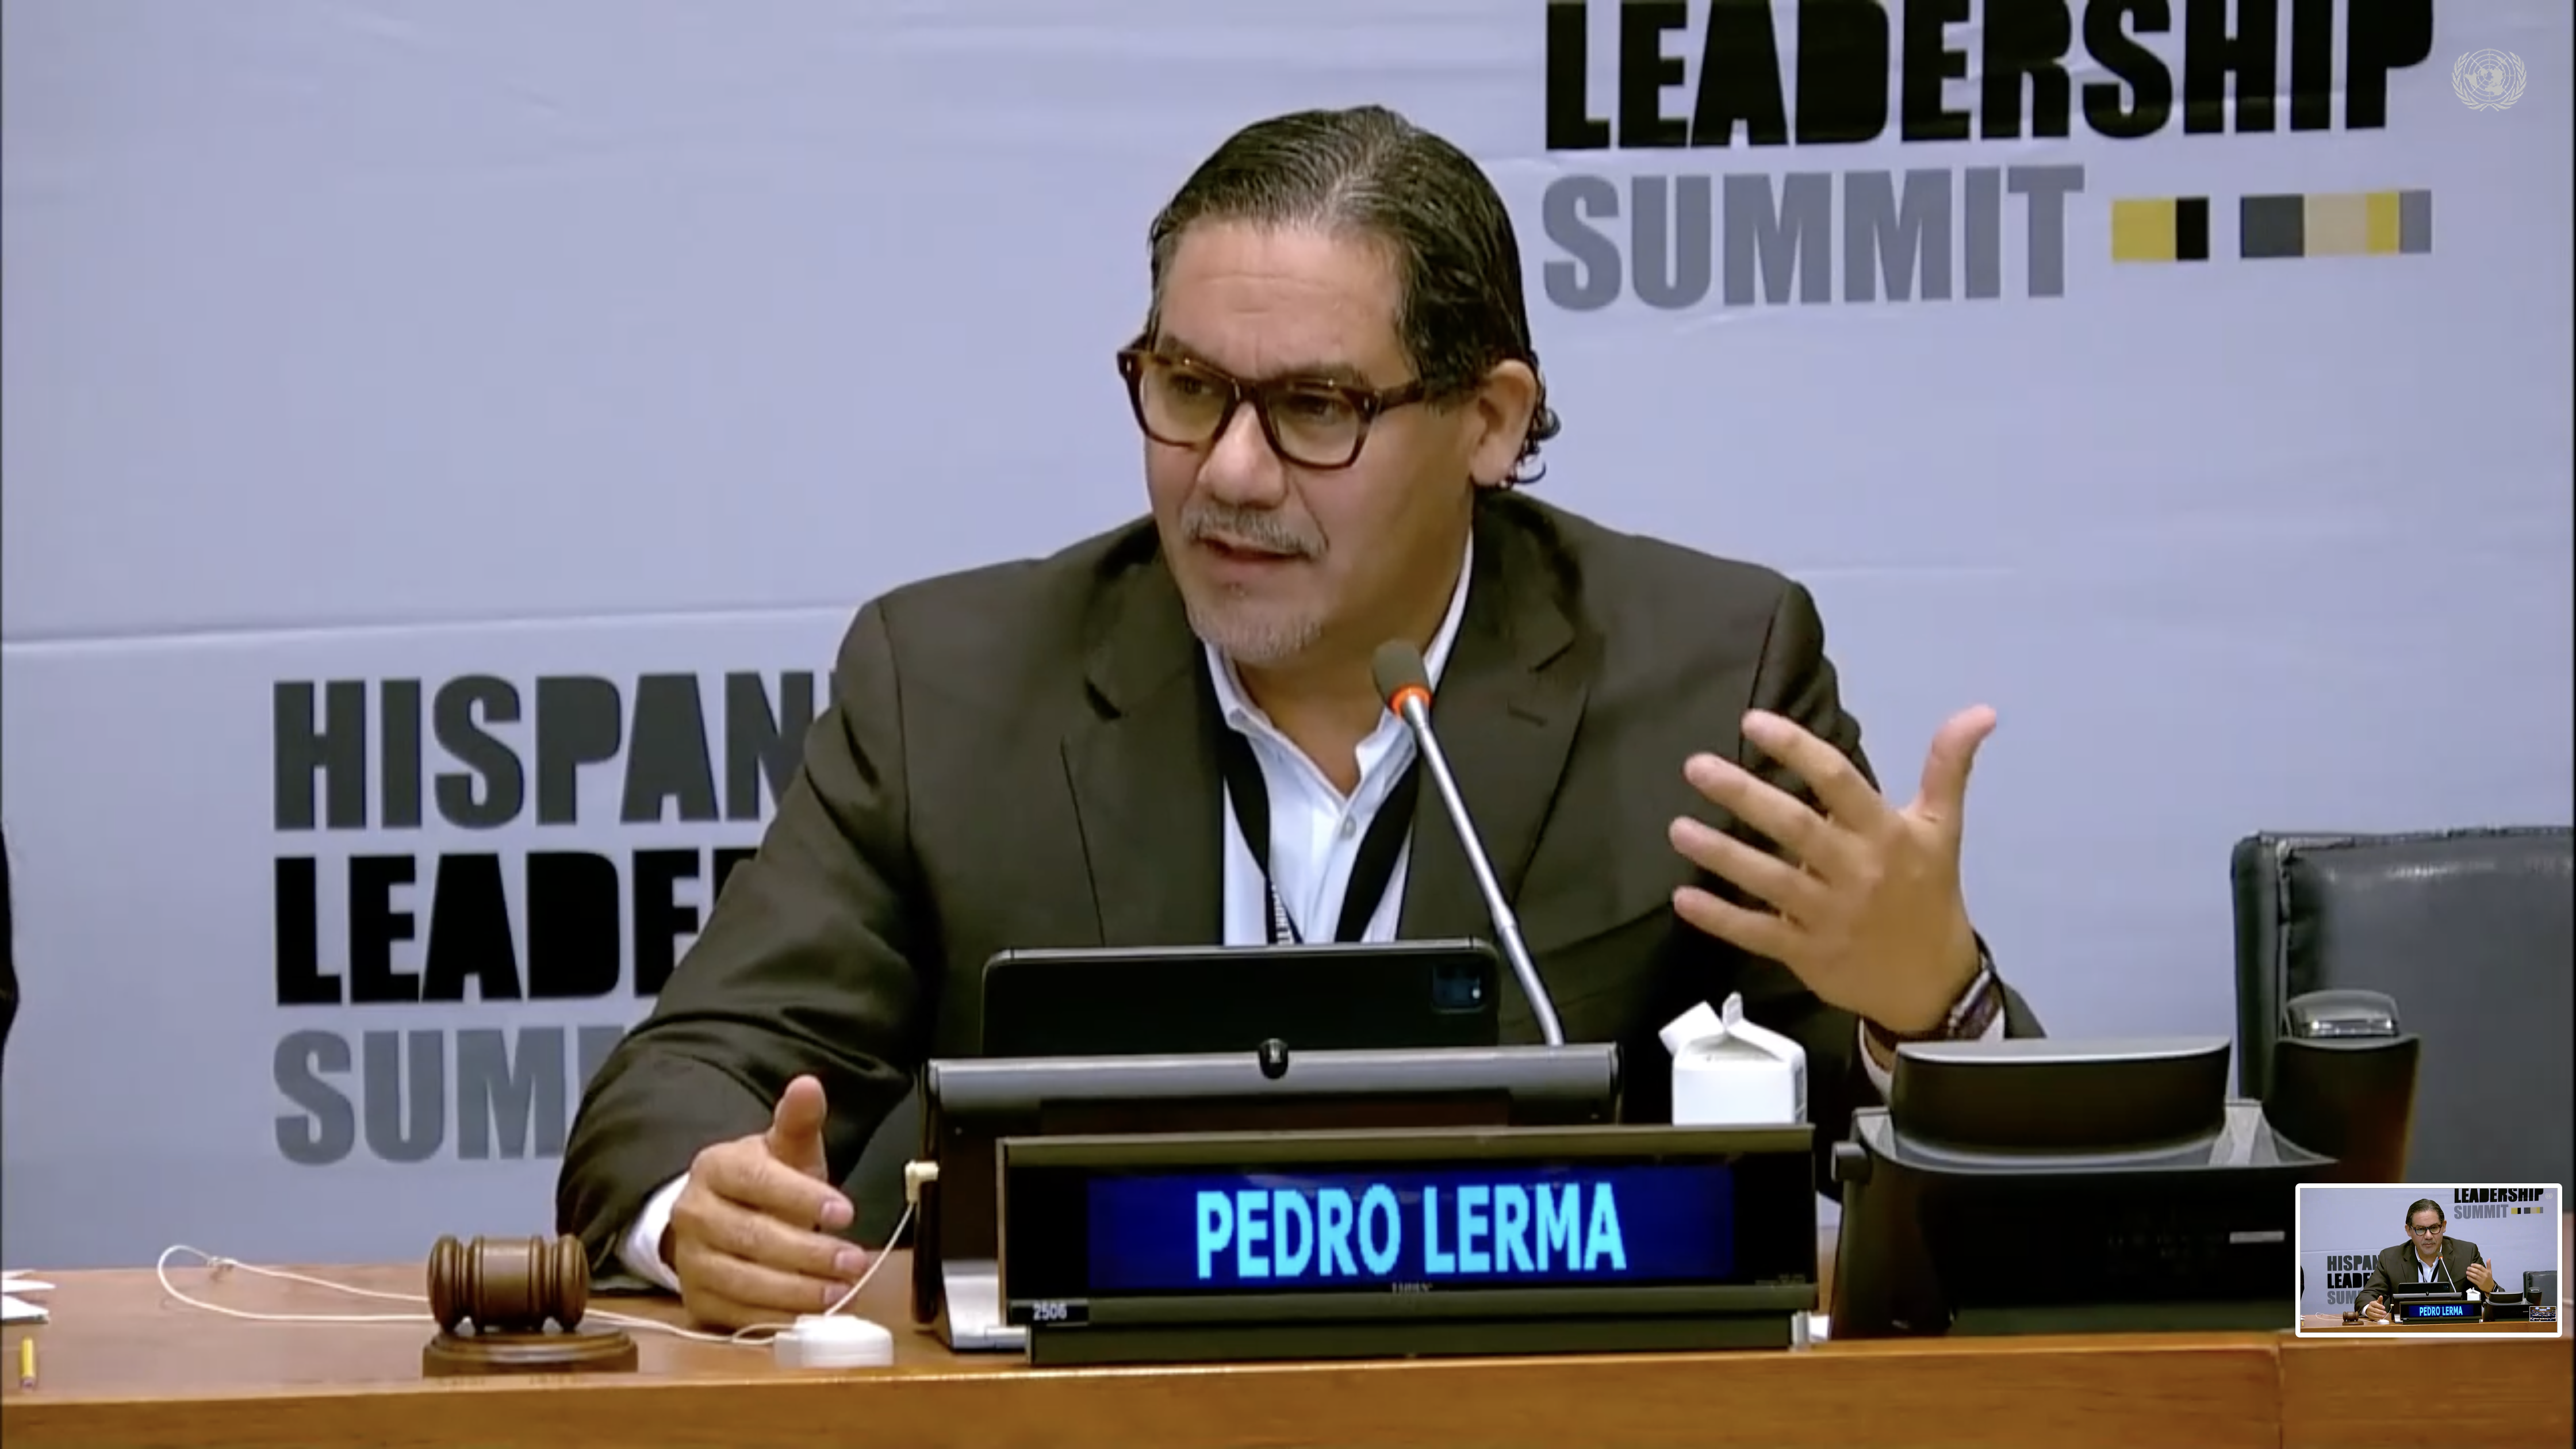 Pedro Lerma, CEO of LERMA.